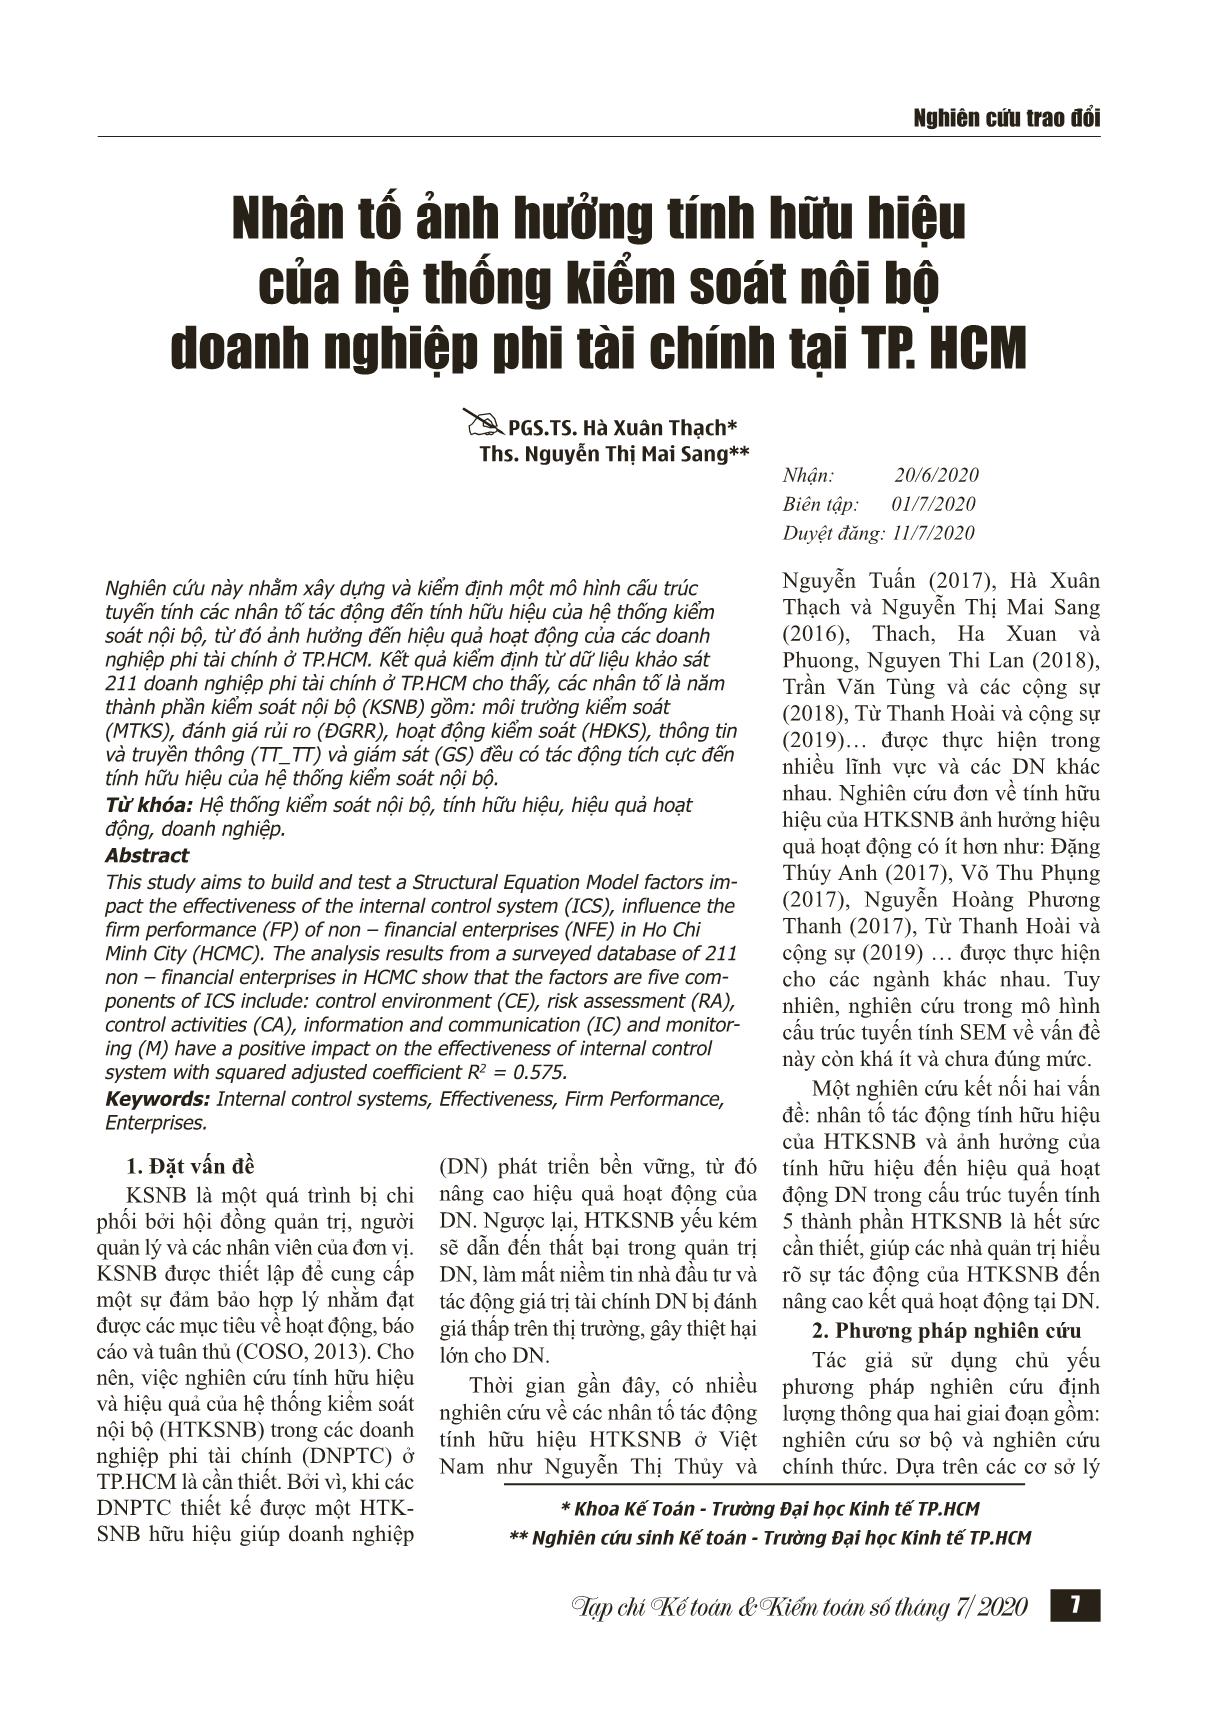 Nhân tố ảnh hưởng tính hữu hiệu của hệ thống kiểm soát nội bộ doanh nghiệp phi tài chính tại thành phố Hồ Chí Minh trang 1